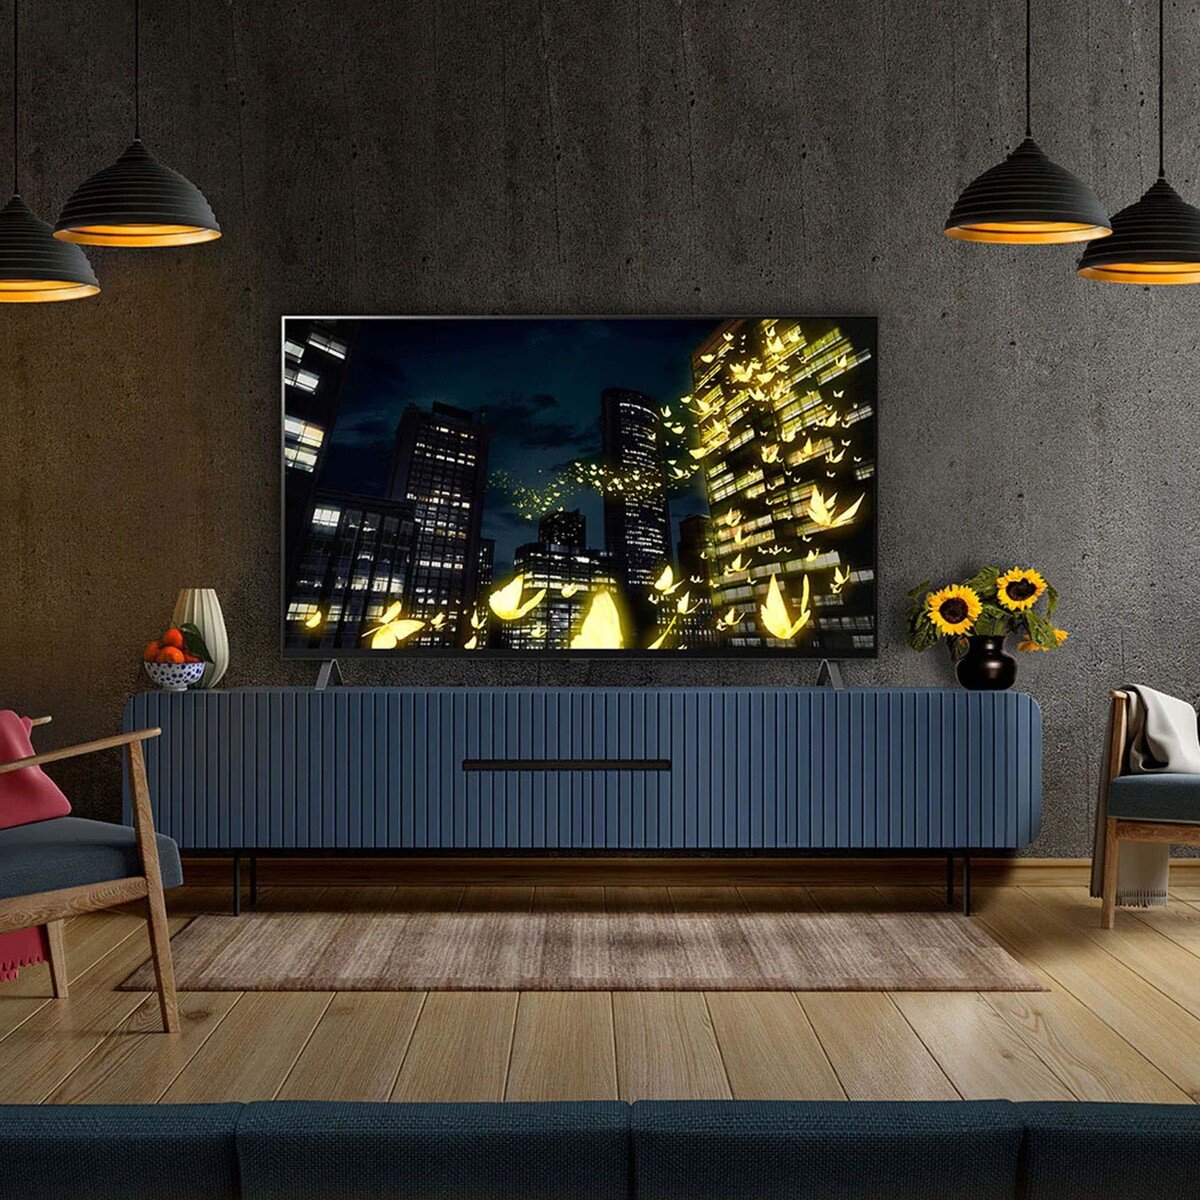 LG 4K Smart OLED TV OLED65A26LA 65inch, 4K Cinema HDR, webOS Smart TV